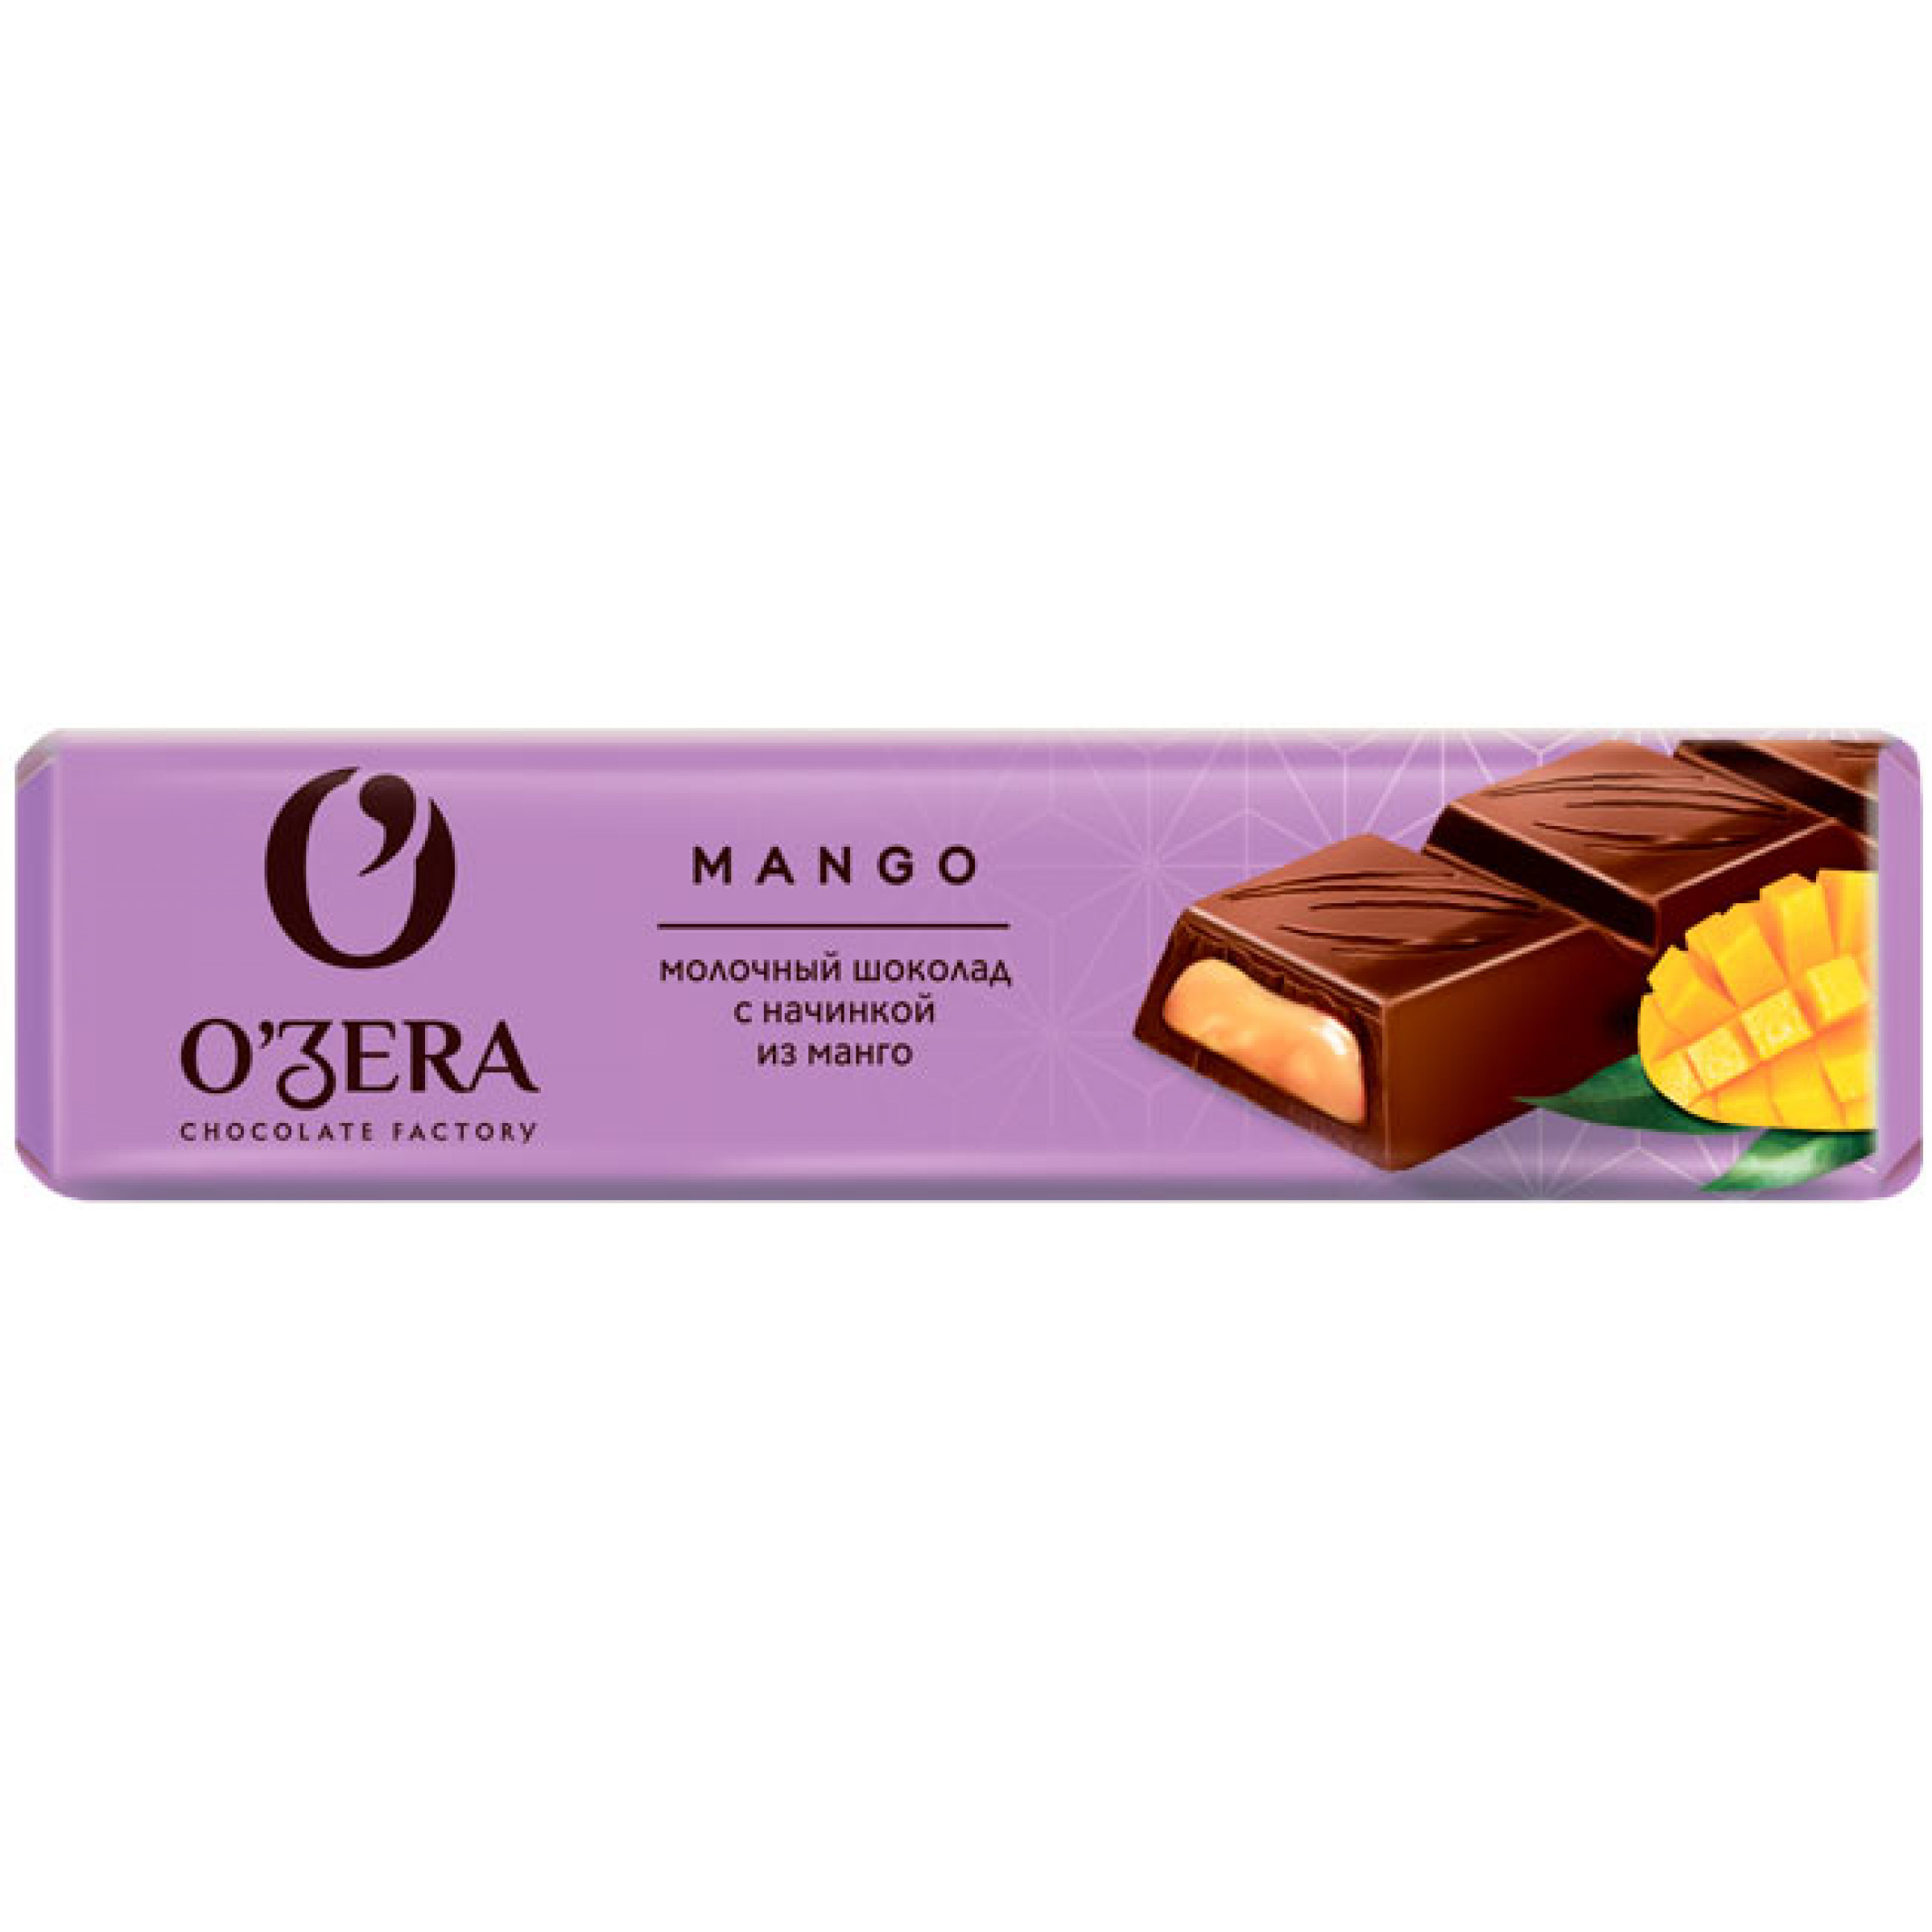 Шоколадный батончик OZera Mango, 50 г